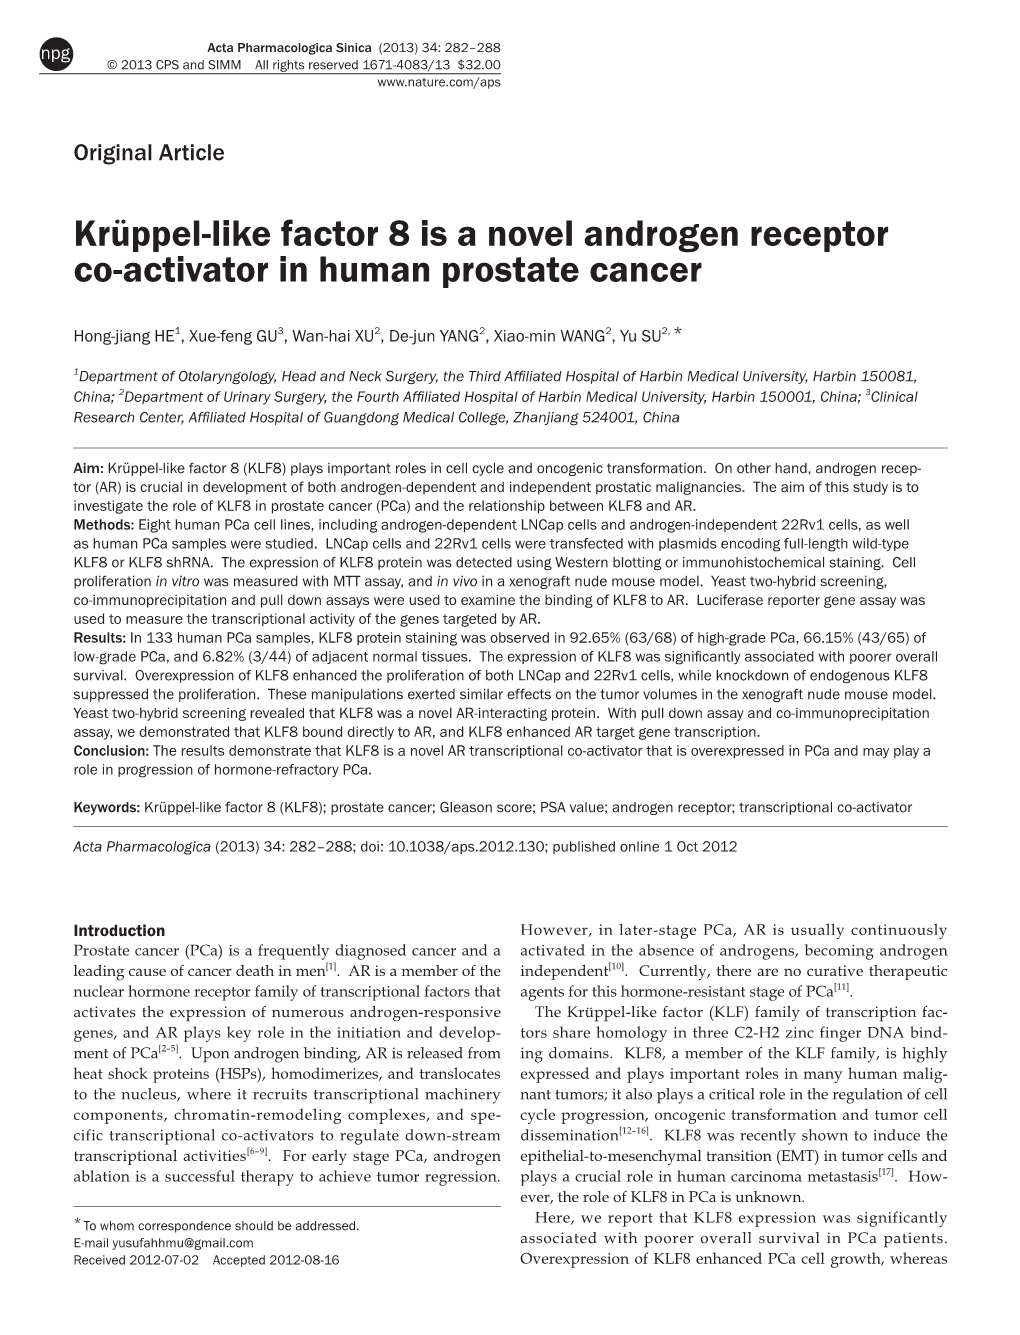 Krüppel-Like Factor 8 Is a Novel Androgen Receptor Co-Activator in Human Prostate Cancer